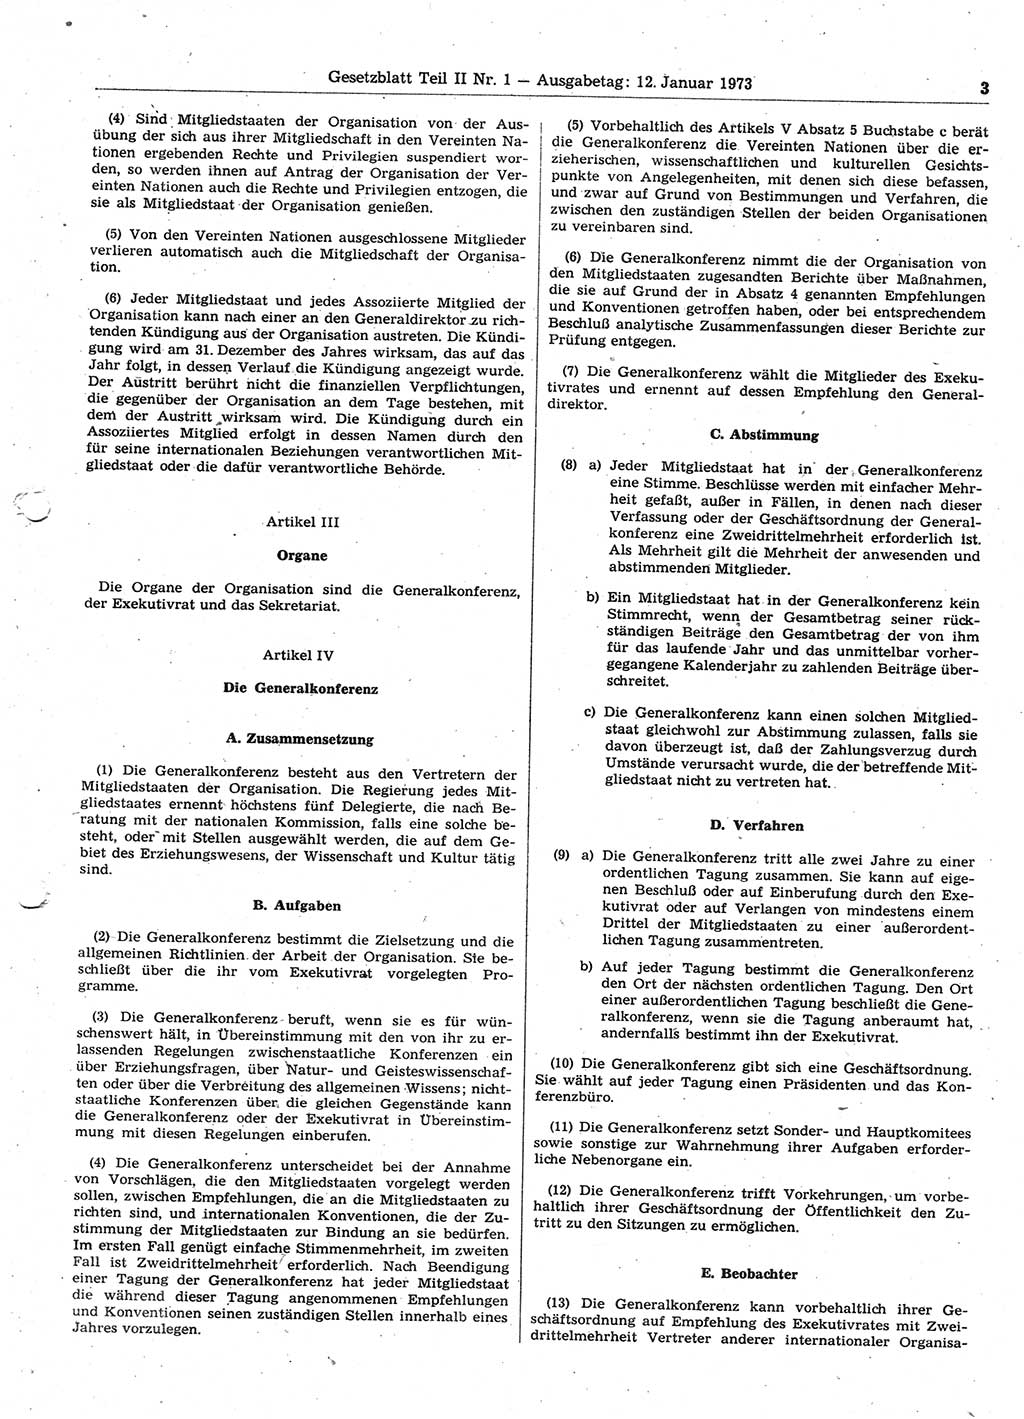 Gesetzblatt (GBl.) der Deutschen Demokratischen Republik (DDR) Teil ⅠⅠ 1973, Seite 3 (GBl. DDR ⅠⅠ 1973, S. 3)